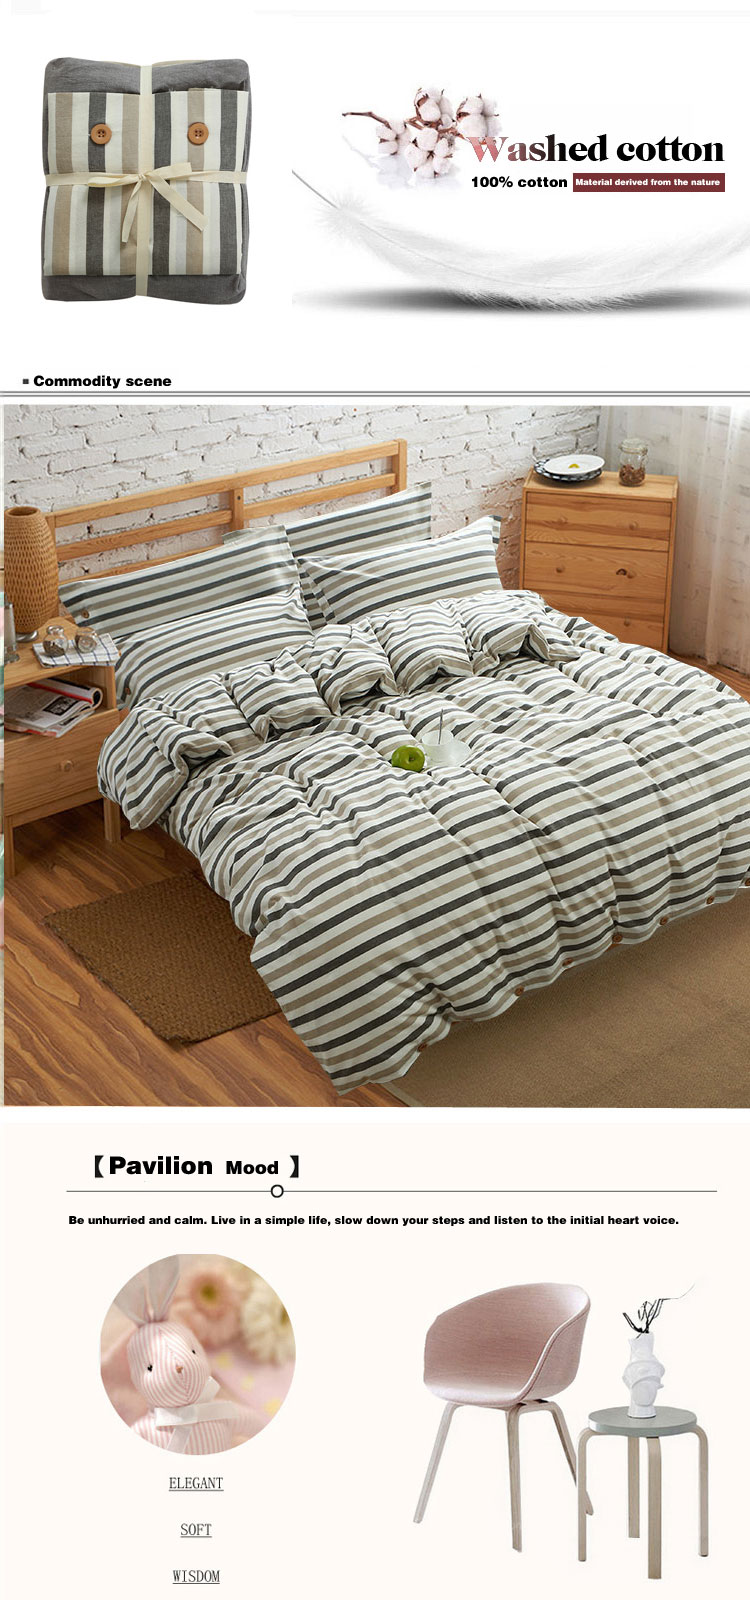 Patchwork Dorm Room Bed Linen